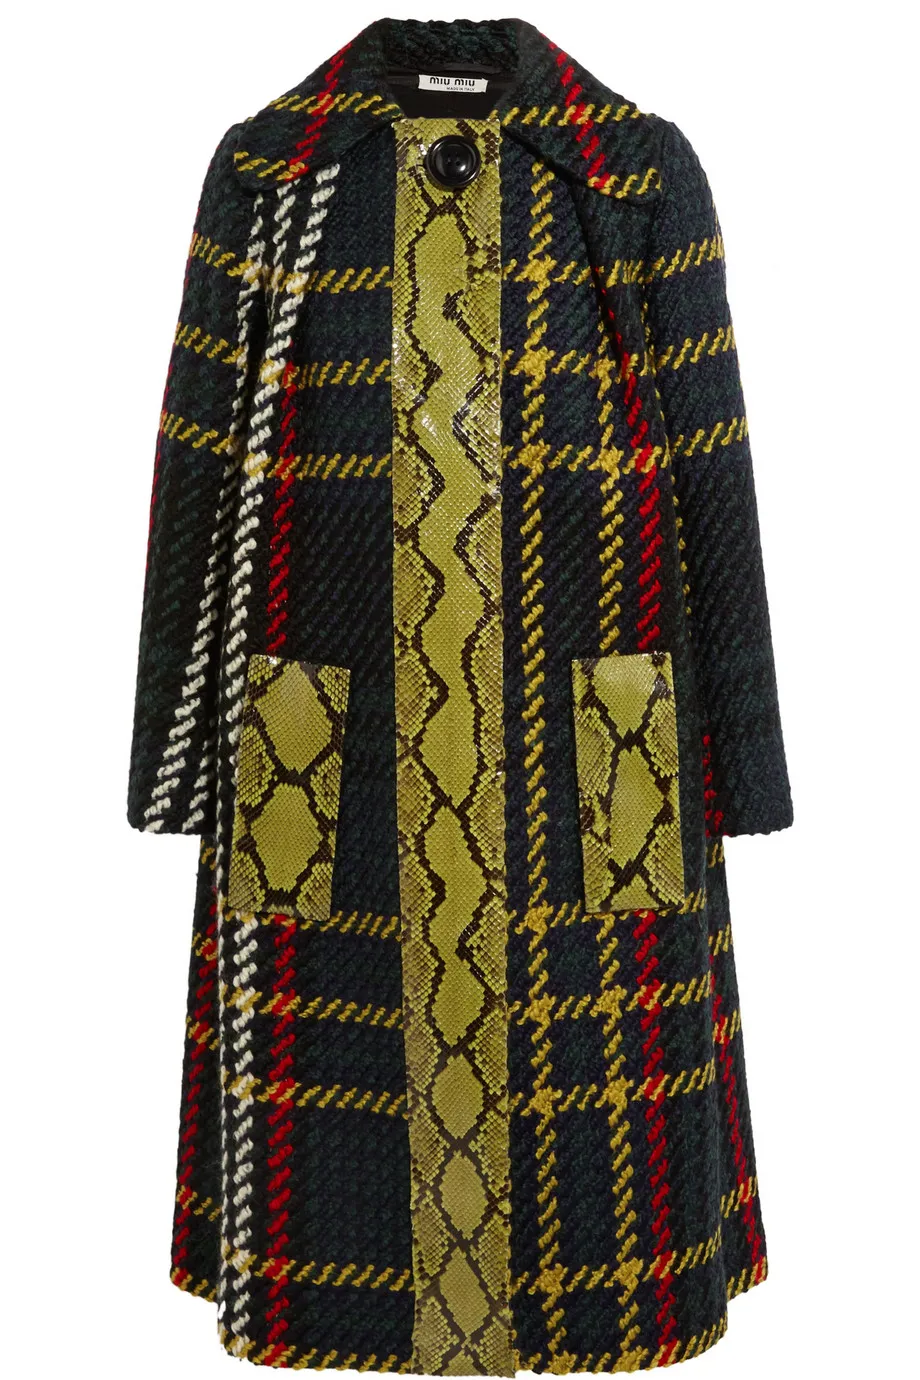 الأزياء منقوشة gird طباعة المرأة معطف مغطى زر الخندق 15100905